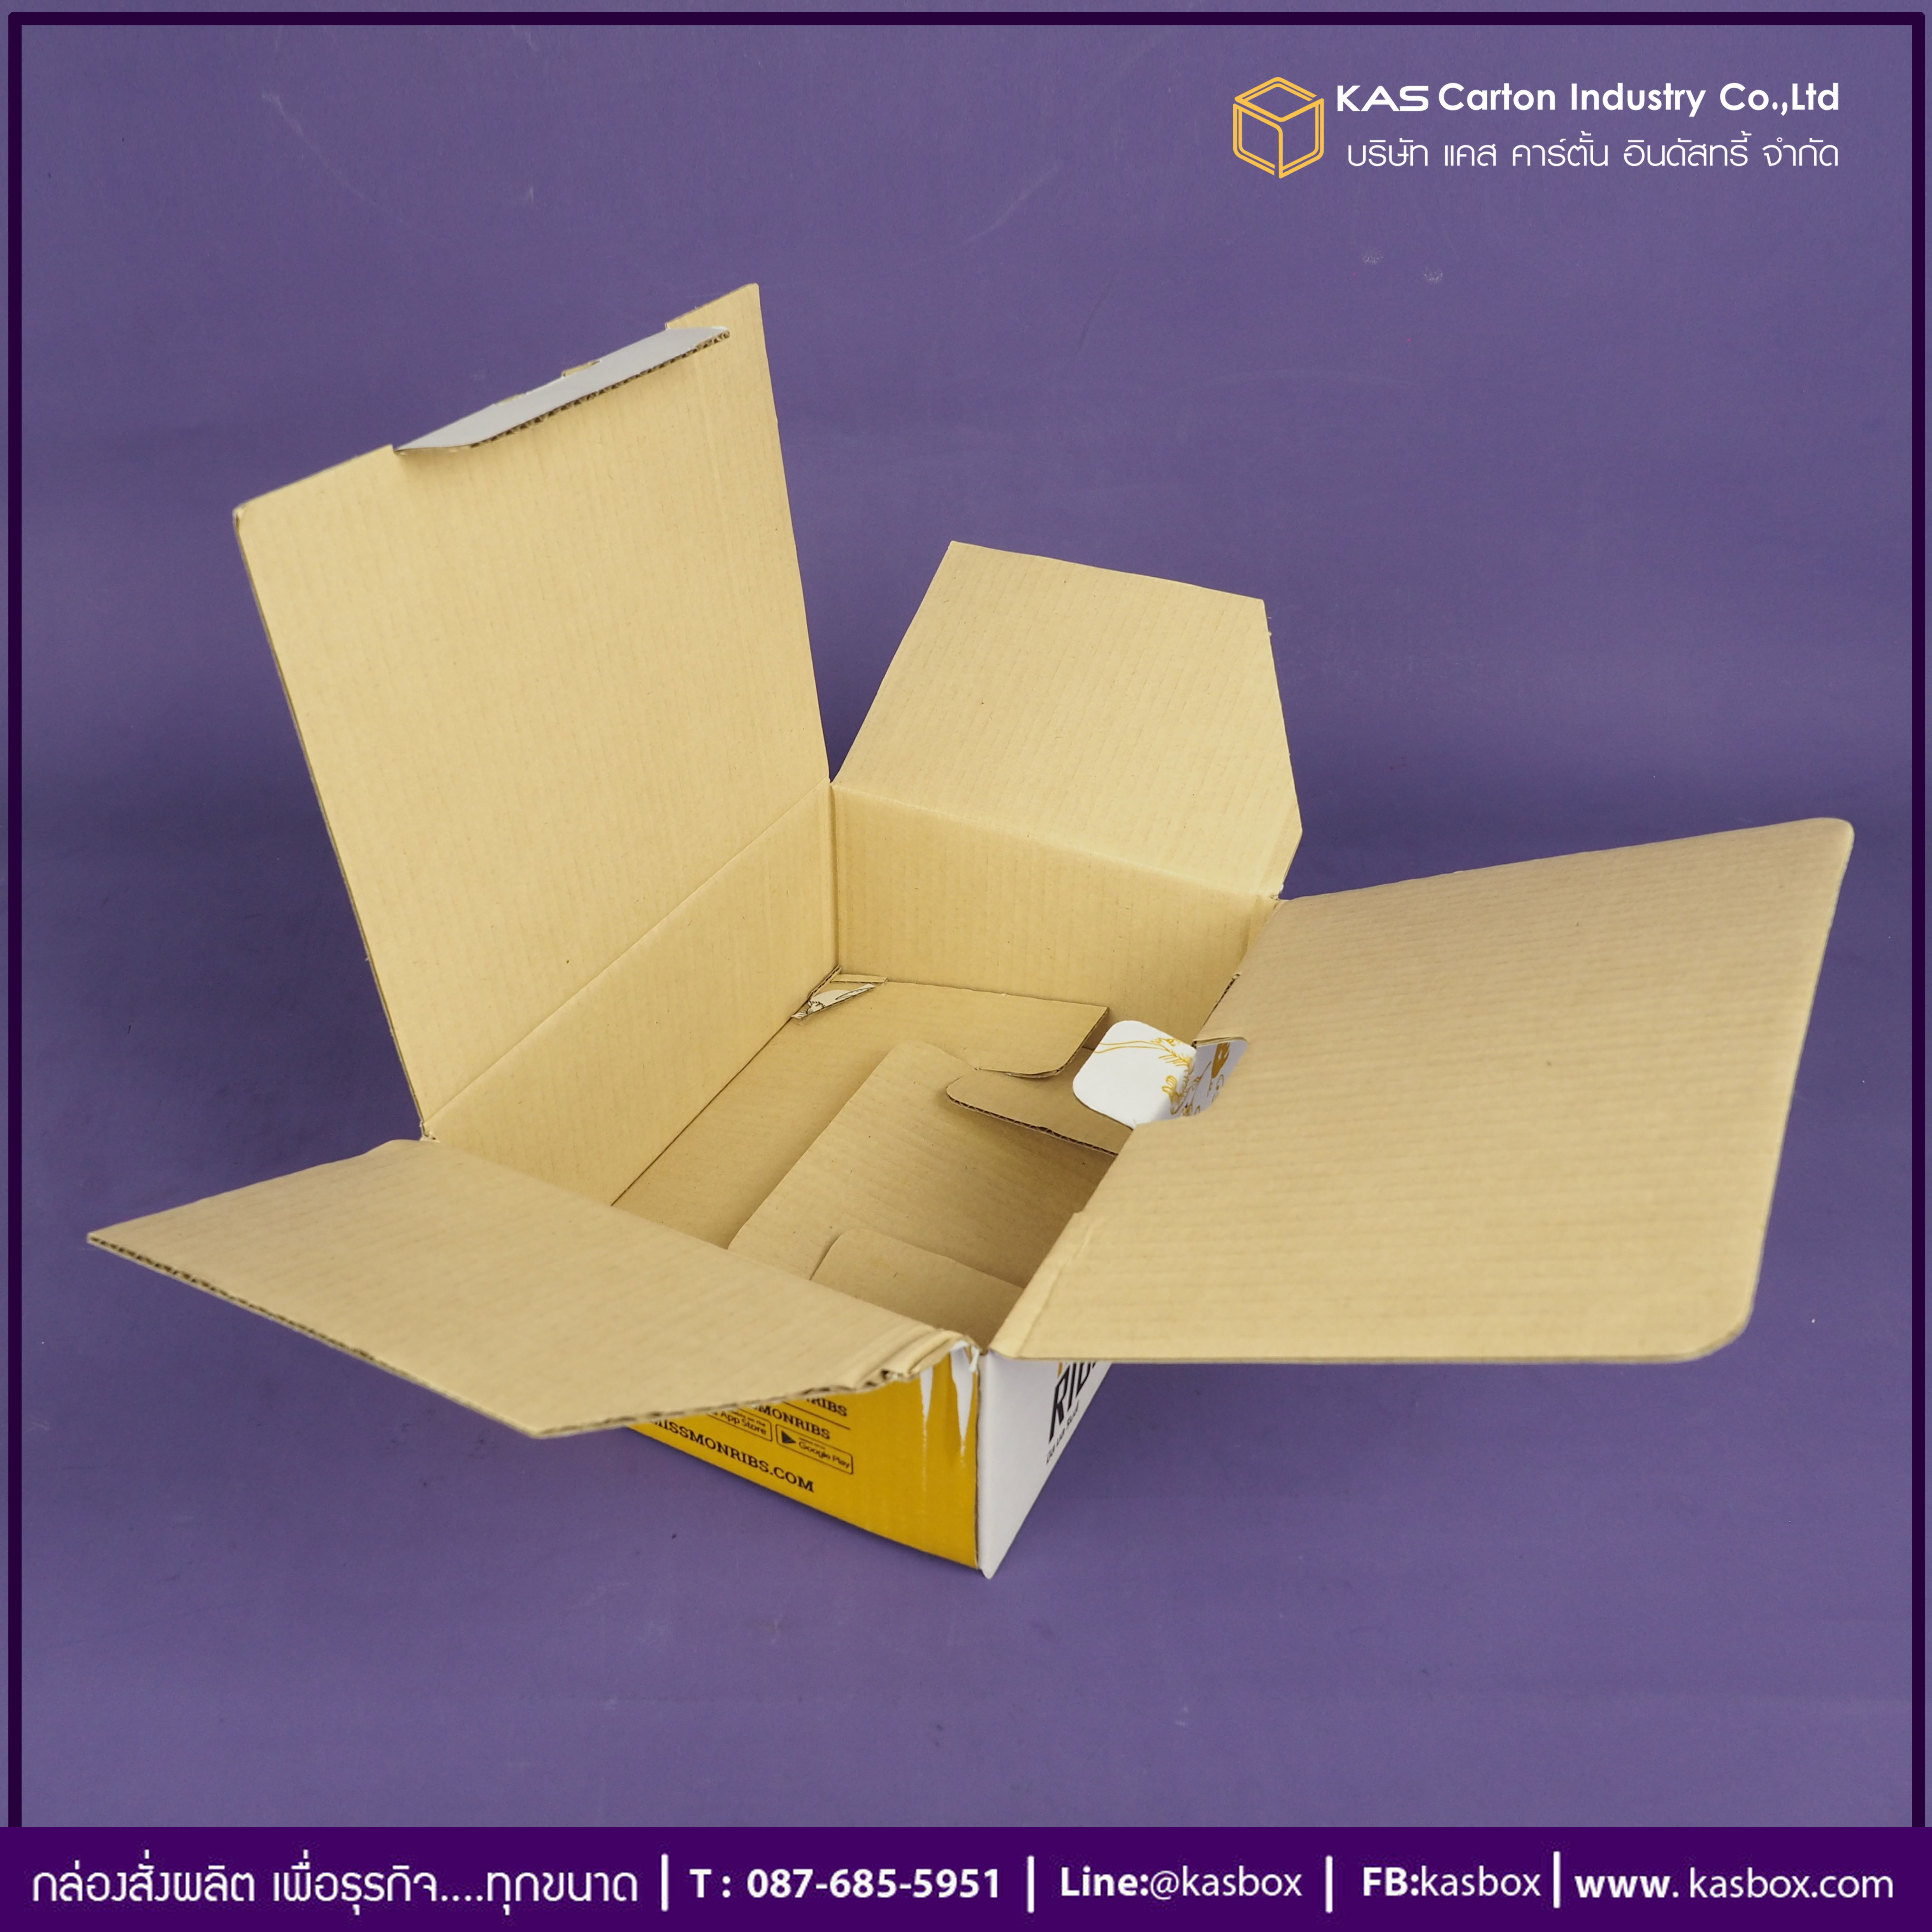 กล่องลูกฟูก สำเร็จรูป และ สั่งผลิต ตามความต้องการลูกค้า กล่องลูกฟูก SME กล่องไปรษณีย์ Delivery ใส่ซี่โครงหมูอบ Miss Mon Ribs